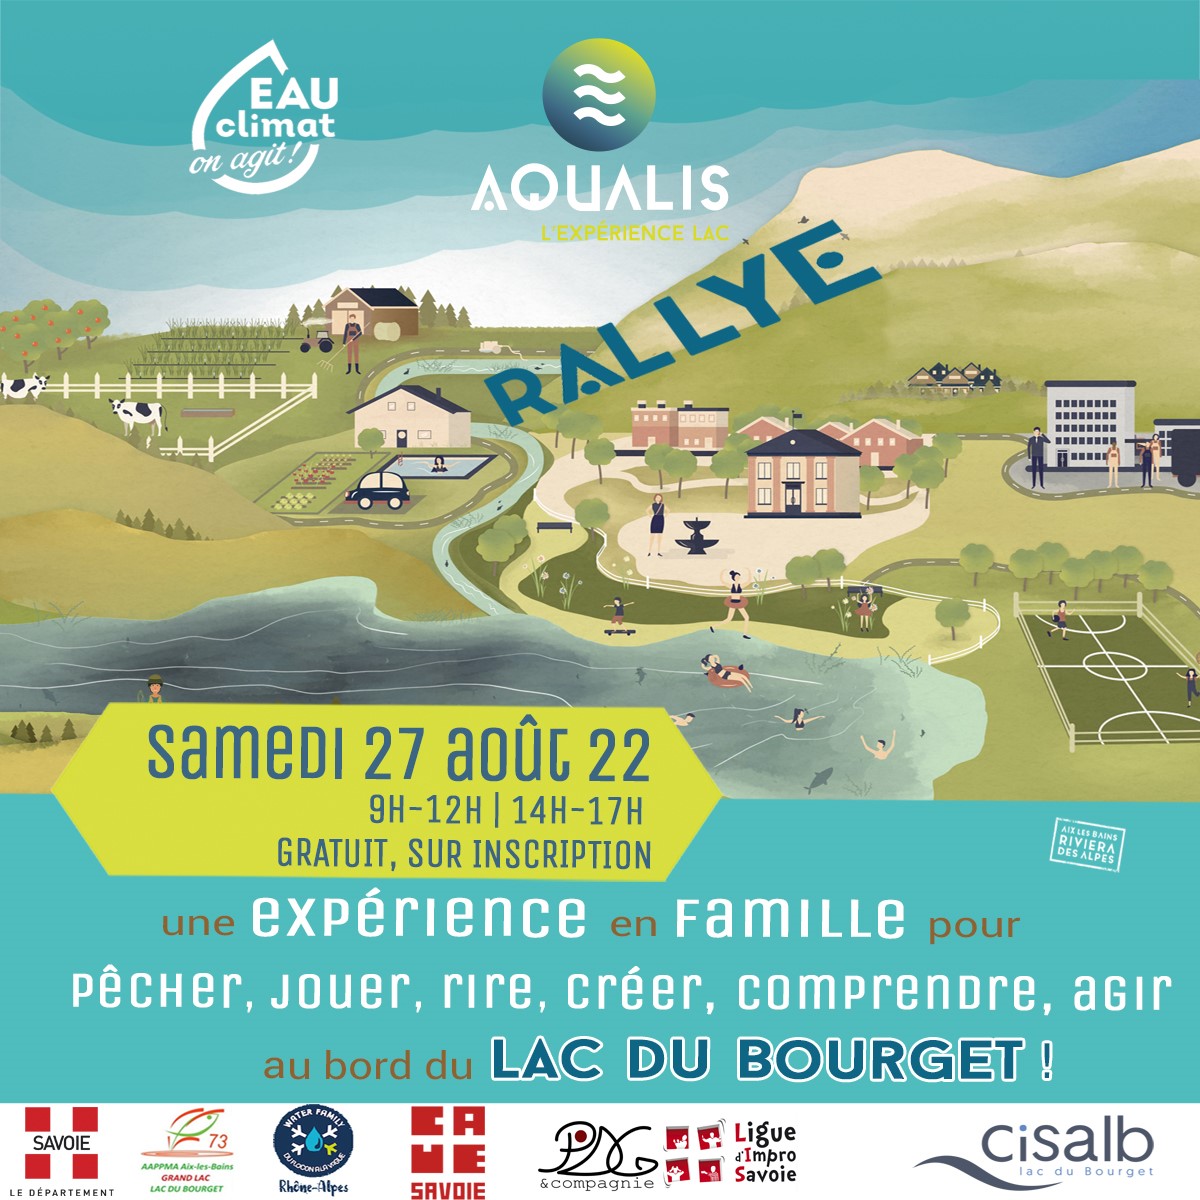 ©Aqualis - Le rallye annuel d'Aqualis